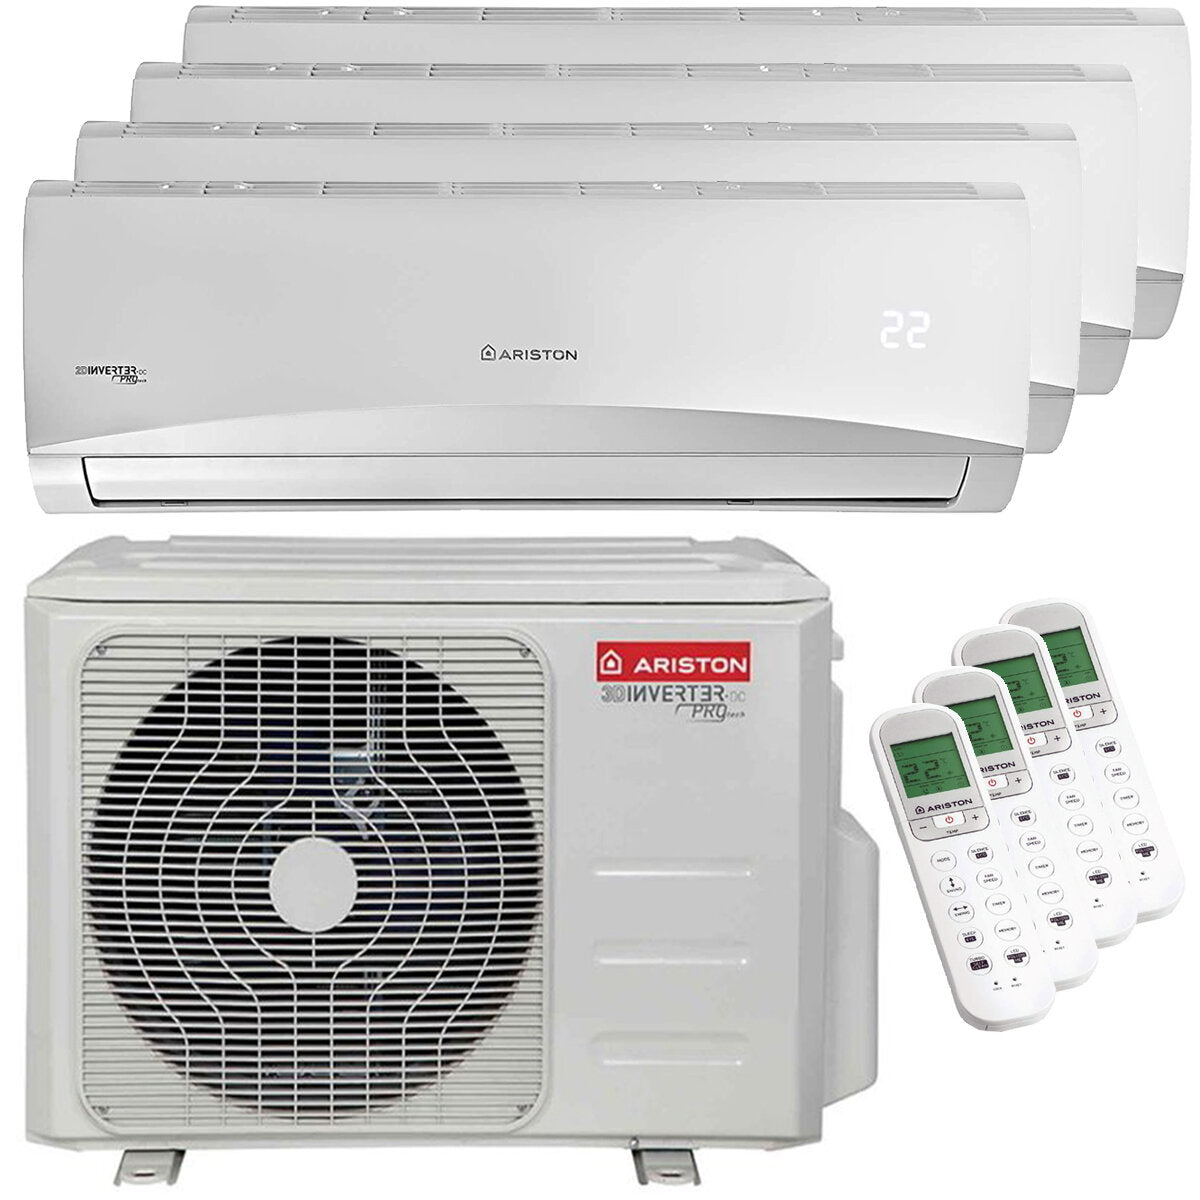 Ariston PRIOS R32 quadri split air conditioner 9000 + 12000 + 12000 + 12000 BTU inverter A ++ outdoor unit 10.6 kW